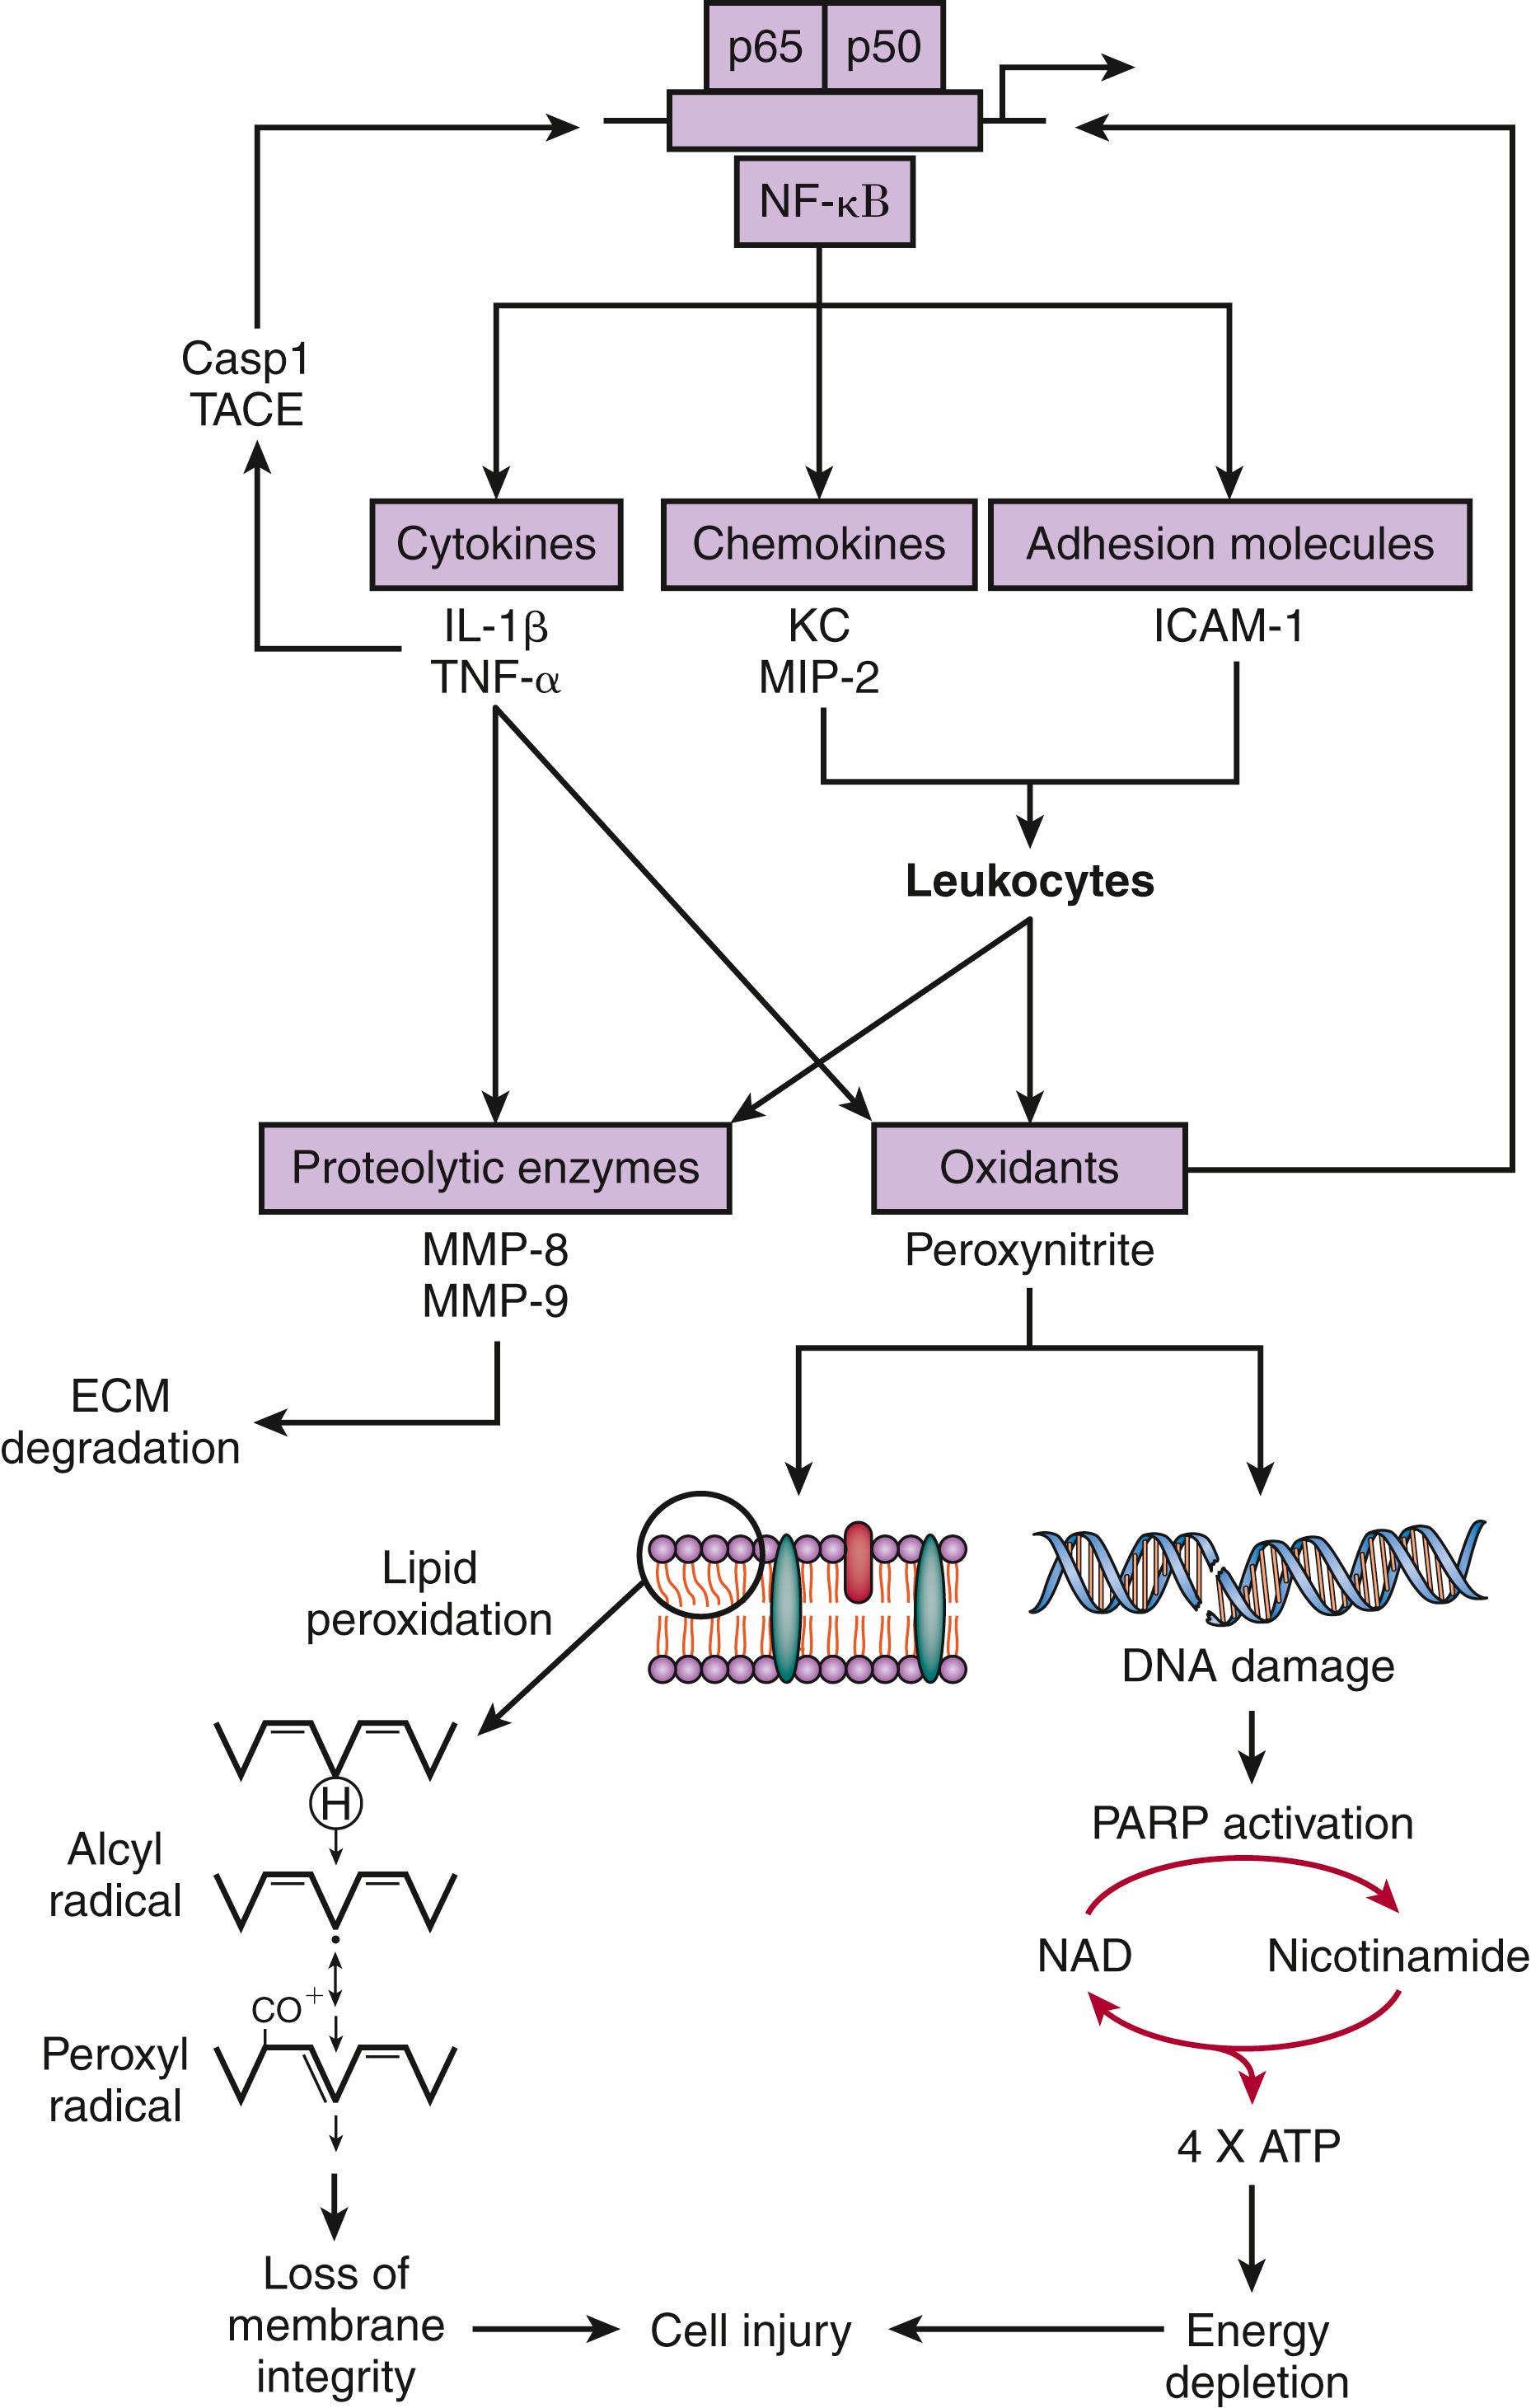 Figure 40.4, Mechanisms of brain damage in experimental pneumococcal meningitis. NF-κB, a transcriptional activator of many genes involved in the pathogenesis of bacterial meningitis, encodes host factors including proinflammatory cytokines, chemokines (e.g., interleukin [IL]-8), and adhesion molecules. The proinflammatory cytokines IL-1β and tumor necrosis factor (TNF)- α are synthesized as inactive precursors that are processed to mature active forms by proteases (caspase 1 [Casp1], also known as IL-1β–converting enzyme, and TNF-α–converting enzyme [TACE]). IL-1β and TNF-α are potent activators of NF-κB. This process can lead to the uncontrolled expression of proinflammatory mediators and the increased expression of adhesion molecules both on the endothelium (e.g., intercellular adhesion molecule [ICAM]-1) and on neutrophils, leading to a subsequent massive influx of leukocytes into the subarachnoid space. Once present, activated leukocytes release a complex variety of potentially cytotoxic agents including oxidants and proteolytic enzymes (e.g., matrix metalloproteinase [MMP]), which may contribute to tissue destruction. Also, peroxynitrite may cause brain damage through a variety of independent mechanisms. The best studied are the attack of polyunsaturated fatty acids, leading to lipid peroxidation, and an alternative pathway that involves oxidant-induced DNA strand breakage and subsequent poly(adenosine diphosphate ribose) polymerase (PARP) activation, initiating an energy-consuming intracellular cycle that ultimately results in cellular energy depletion and cell death. Both mechanisms likely contribute to cell injury during pneumococcal meningitis. ATP, adenosine triphosphate; ECM, extracellular matrix; KC, keratinocyte-derived chemokine; MIP, macrophage inflammatory protein; NAD, nicotinamide adenine dinucleotide.